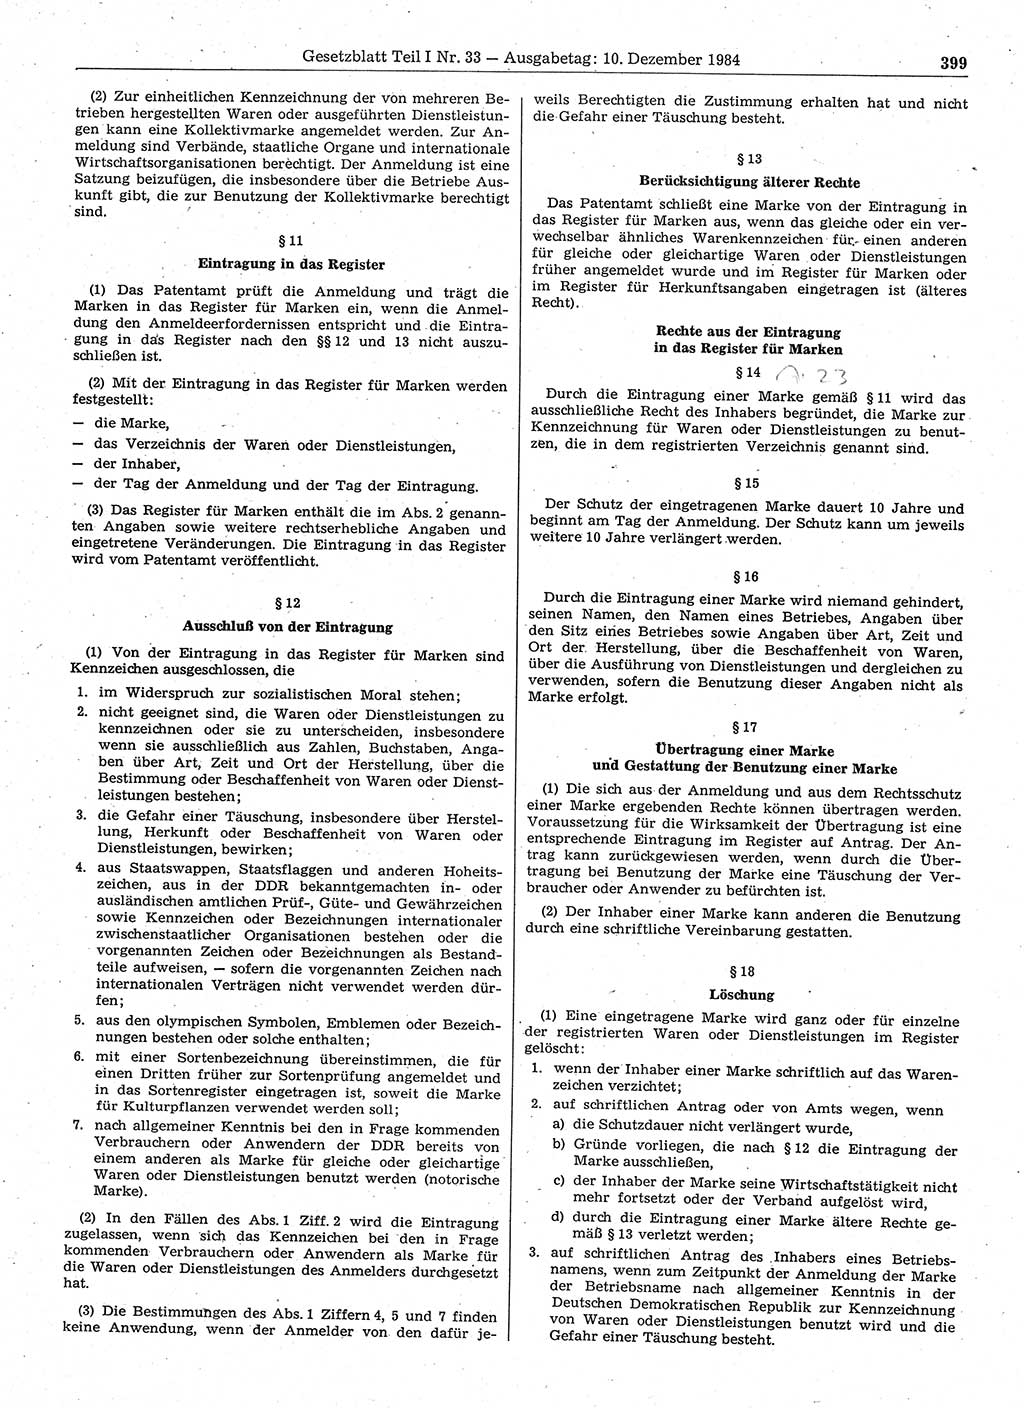 Gesetzblatt (GBl.) der Deutschen Demokratischen Republik (DDR) Teil Ⅰ 1984, Seite 399 (GBl. DDR Ⅰ 1984, S. 399)